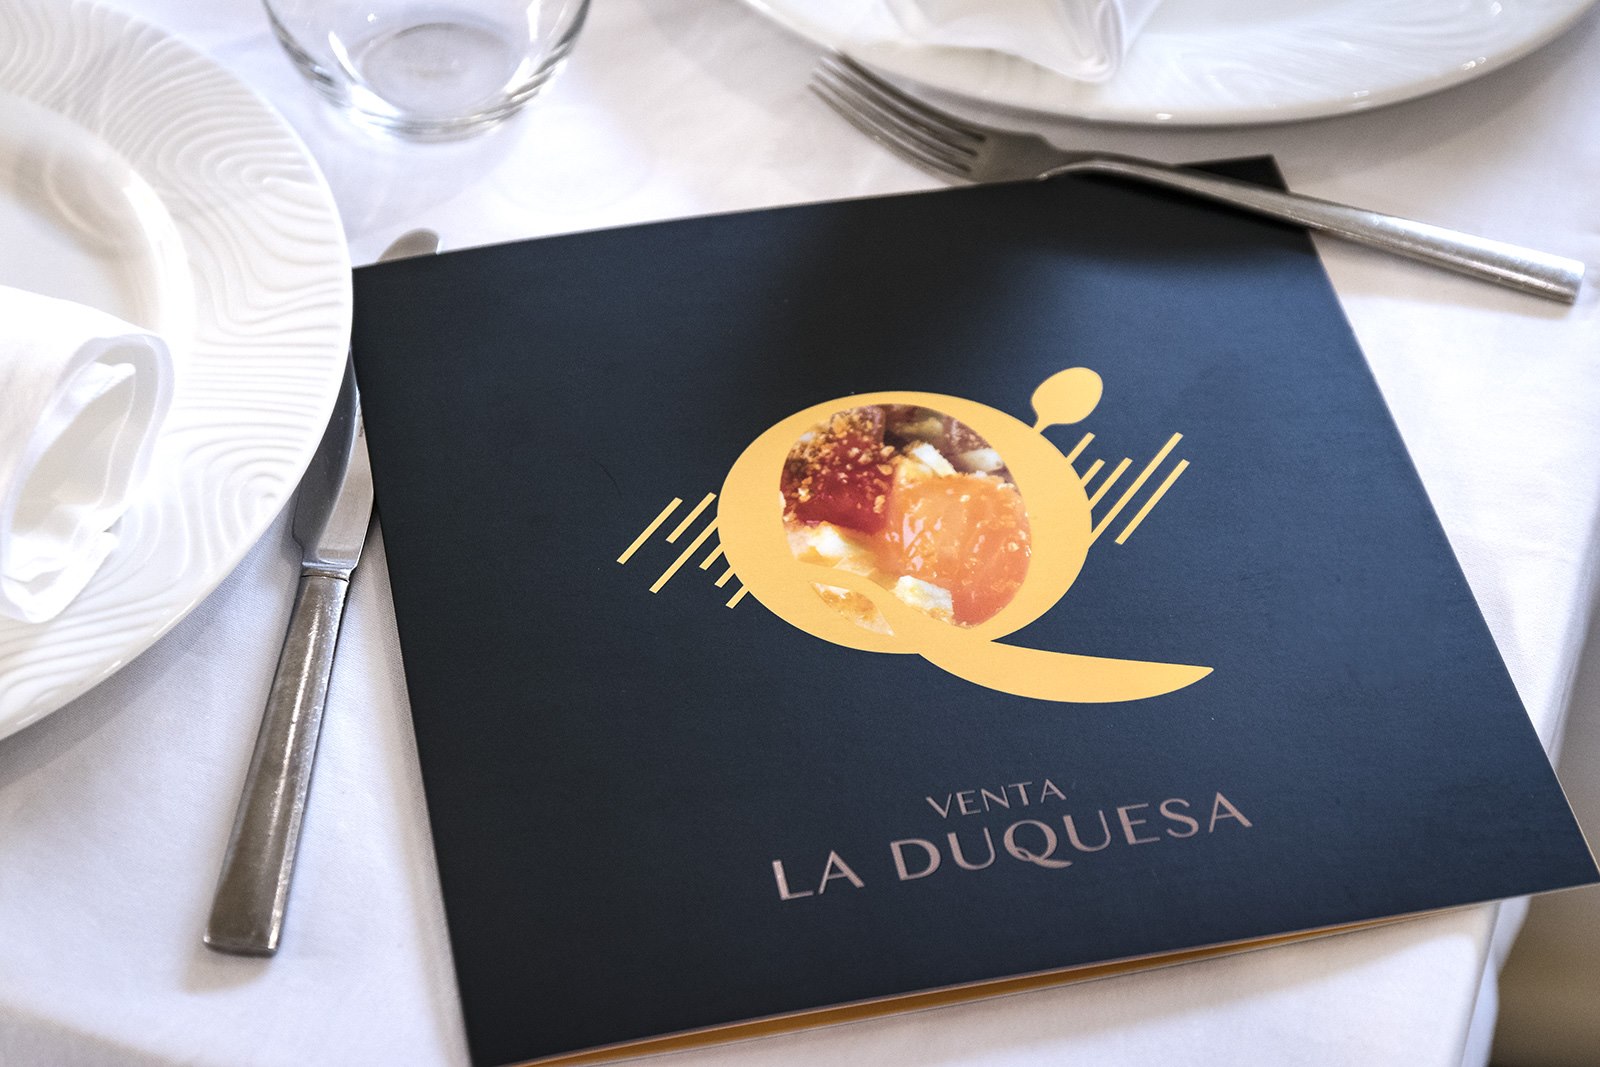 Diseño de cartas restaurante venta la duquesa